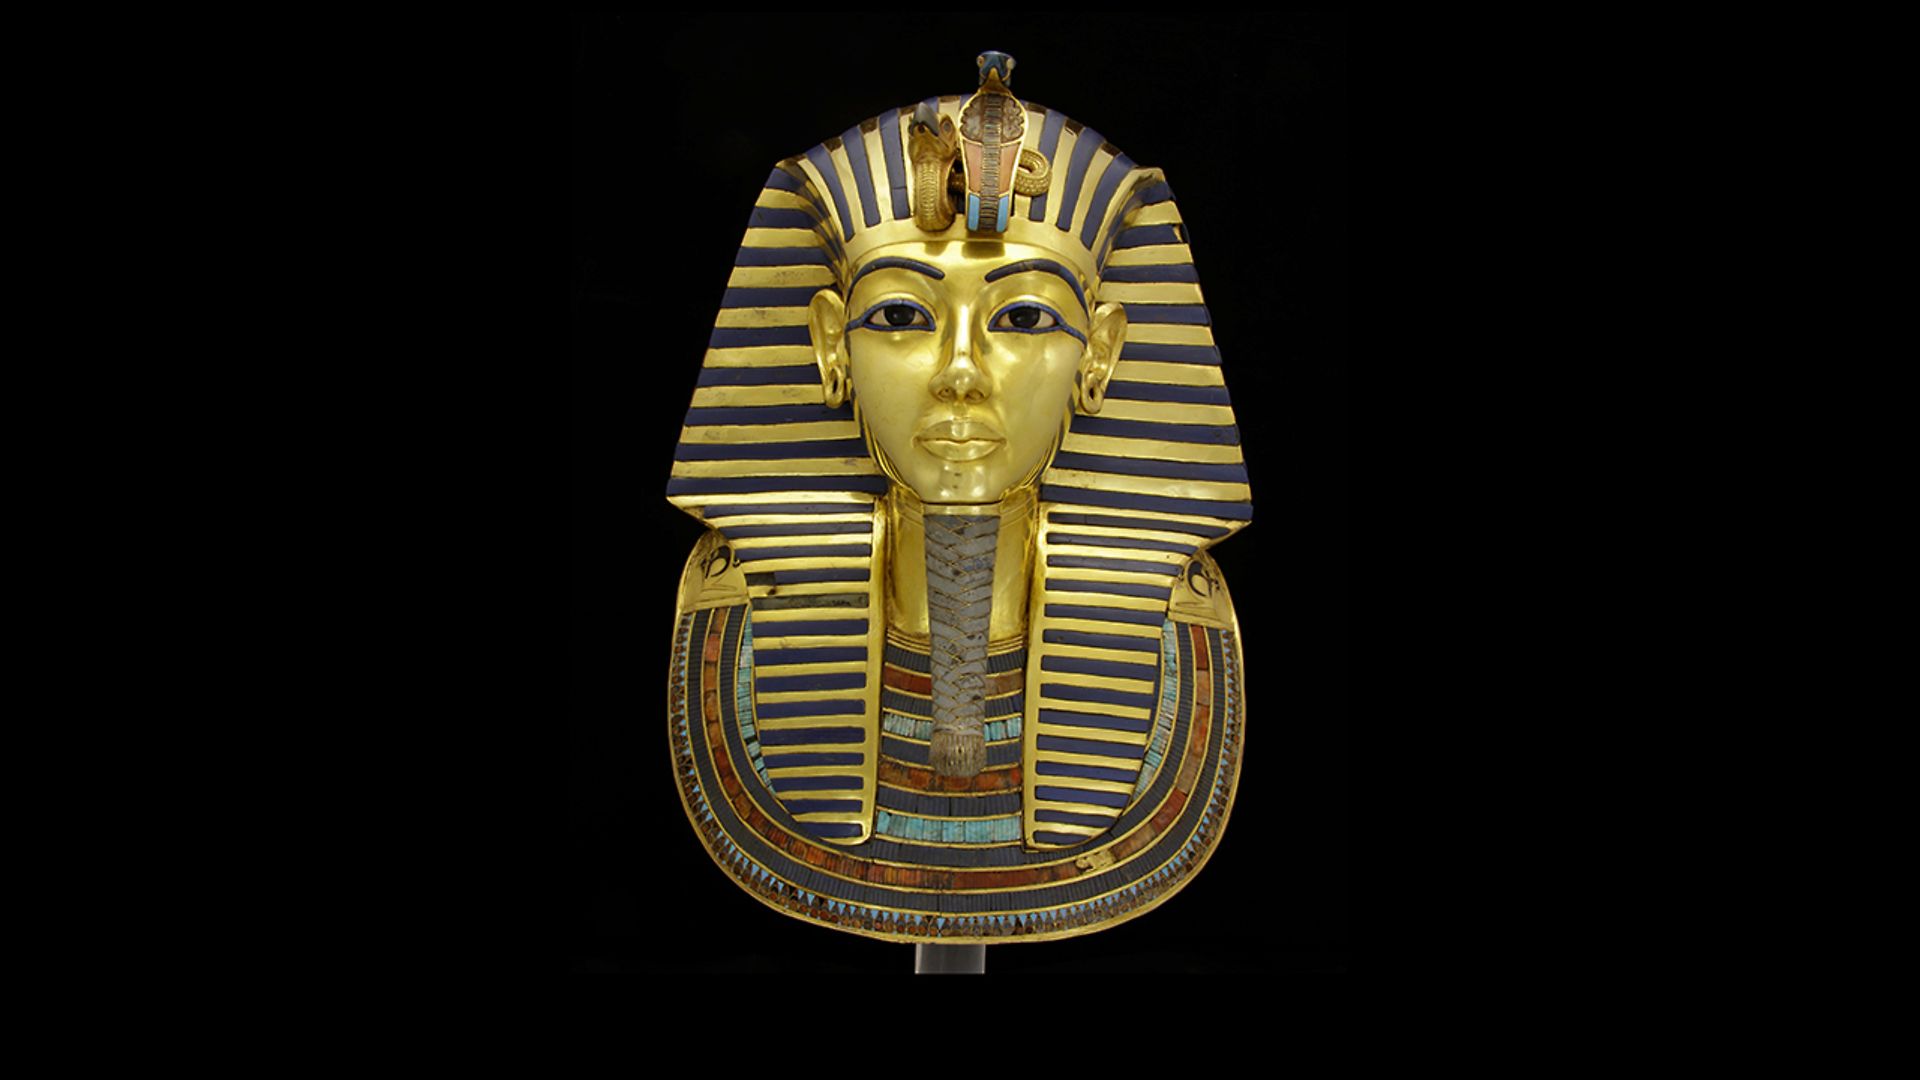 
The restored golden mask of pharaoh Tut Ankh Amun